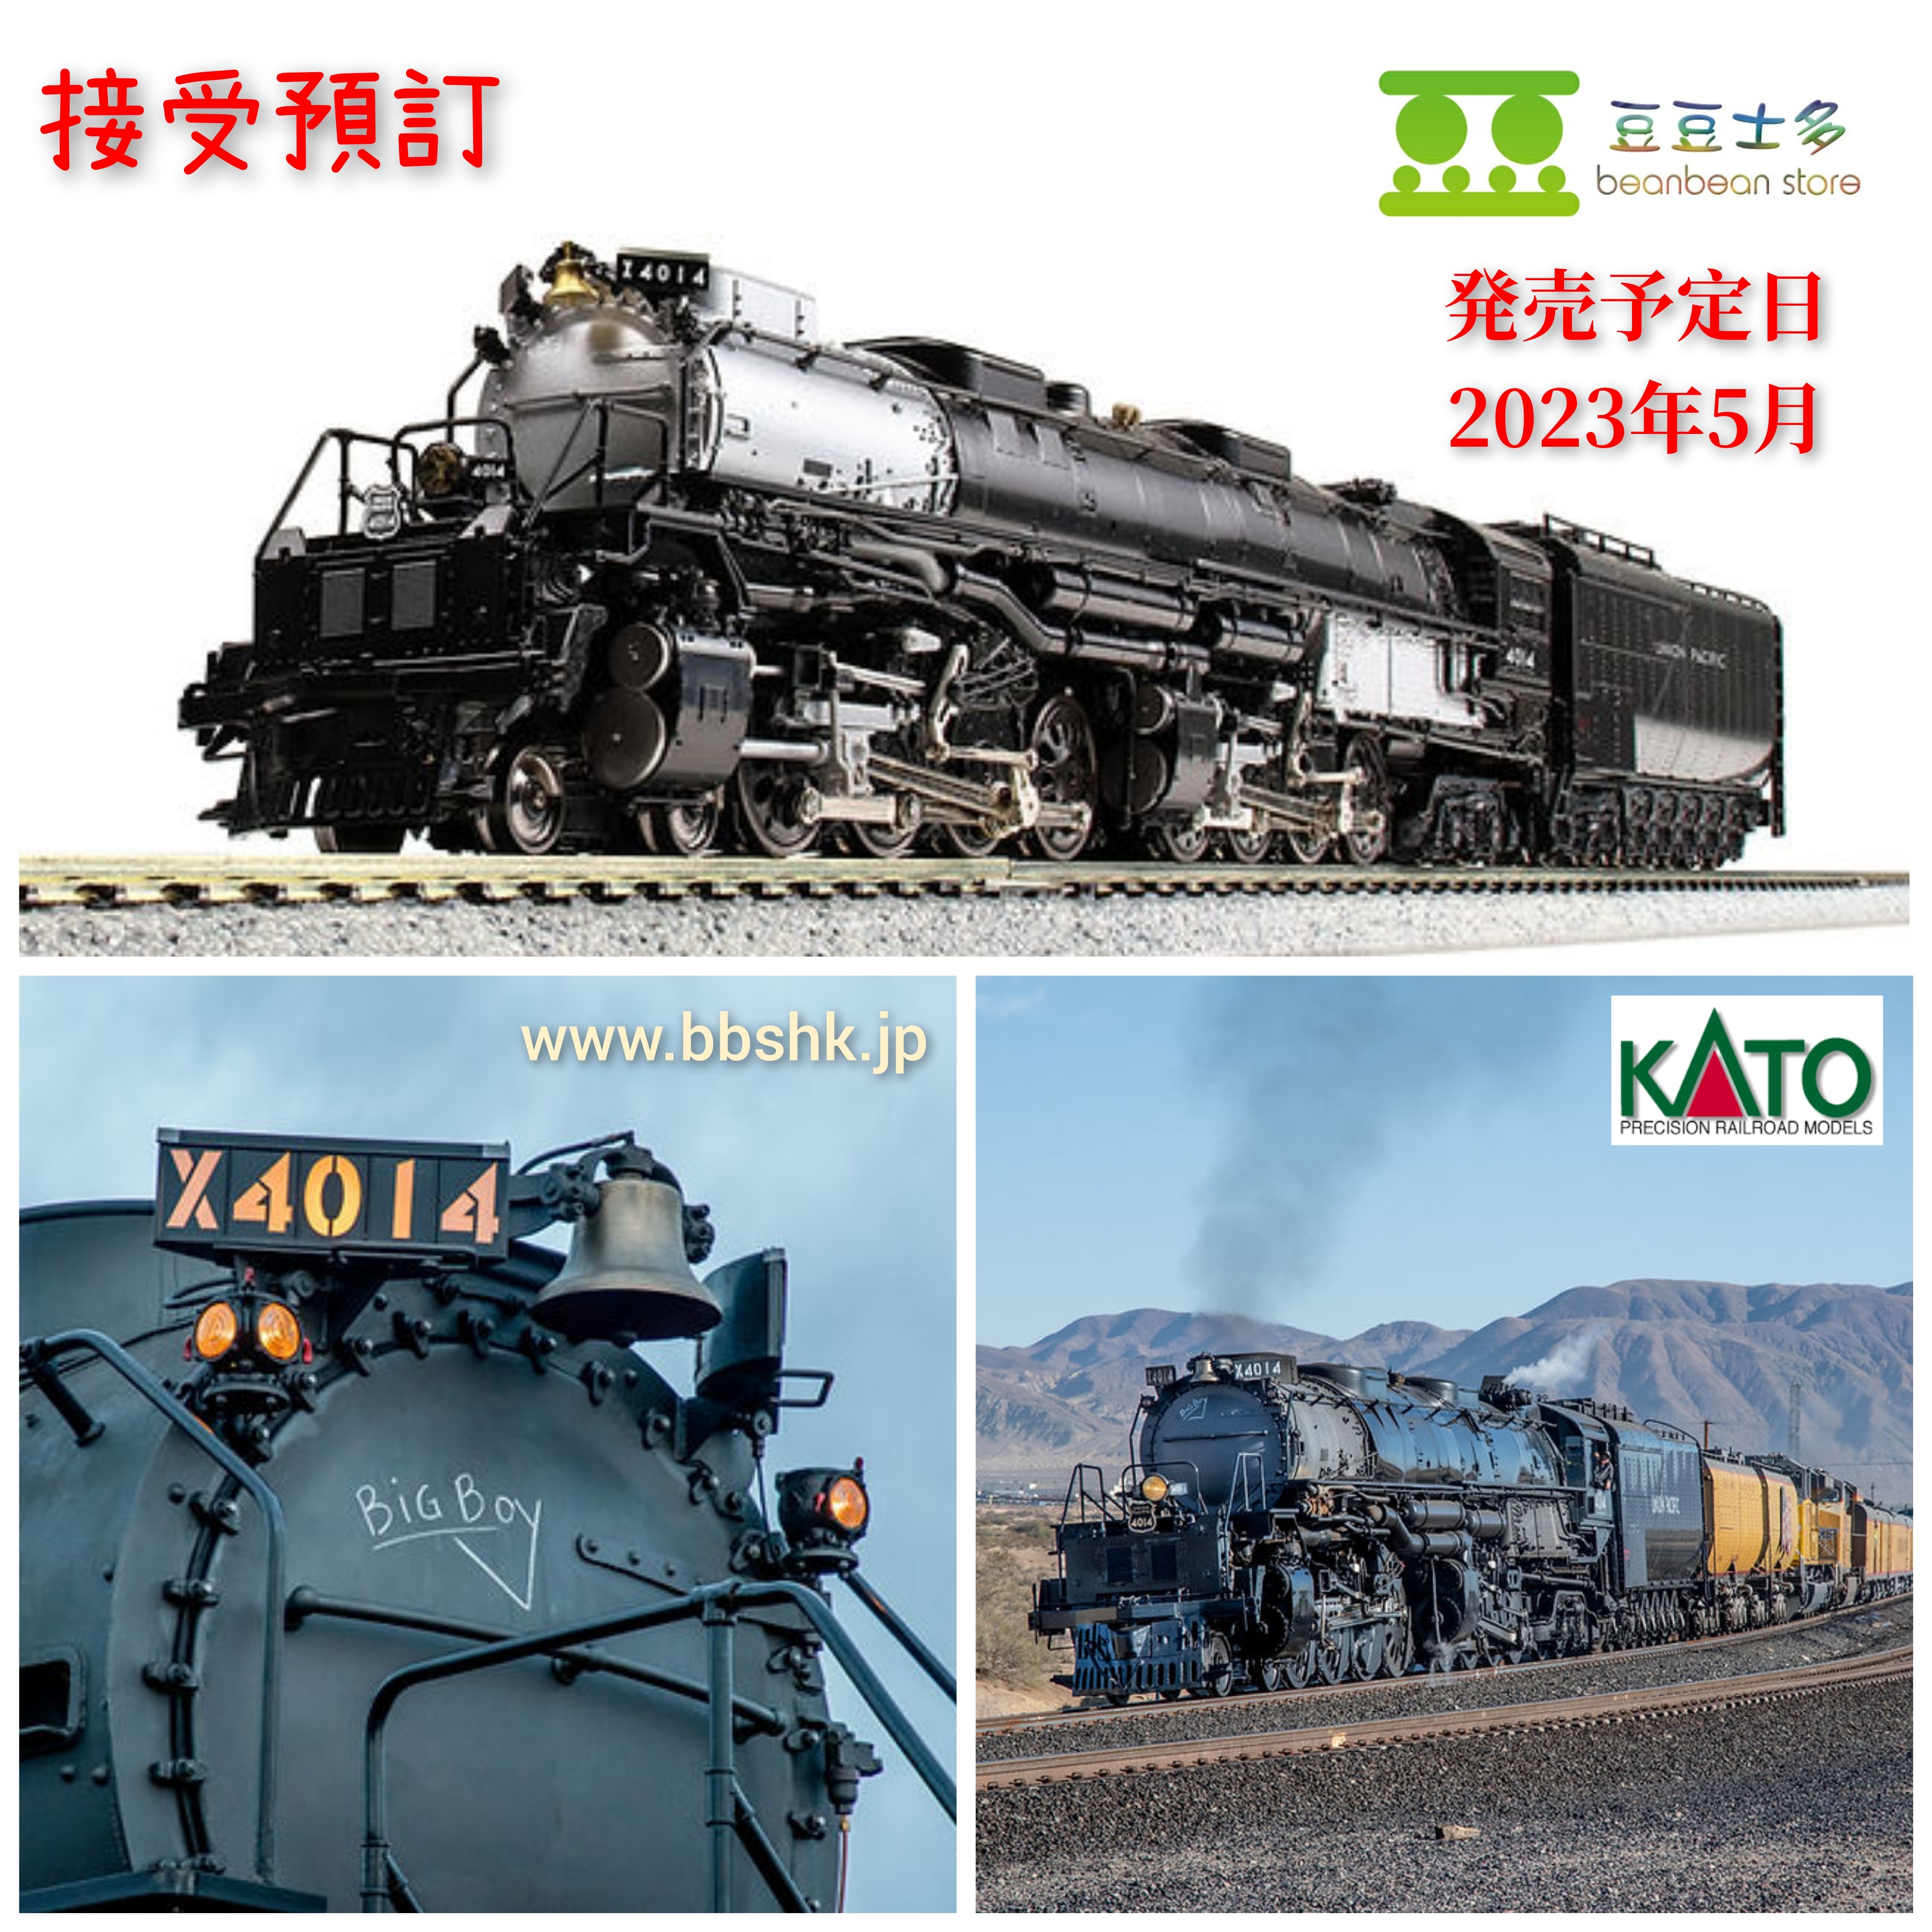 KATO カトー 126-4014 ユニオン・パシフィック鉄道 ビッグボーイ #4014 ...